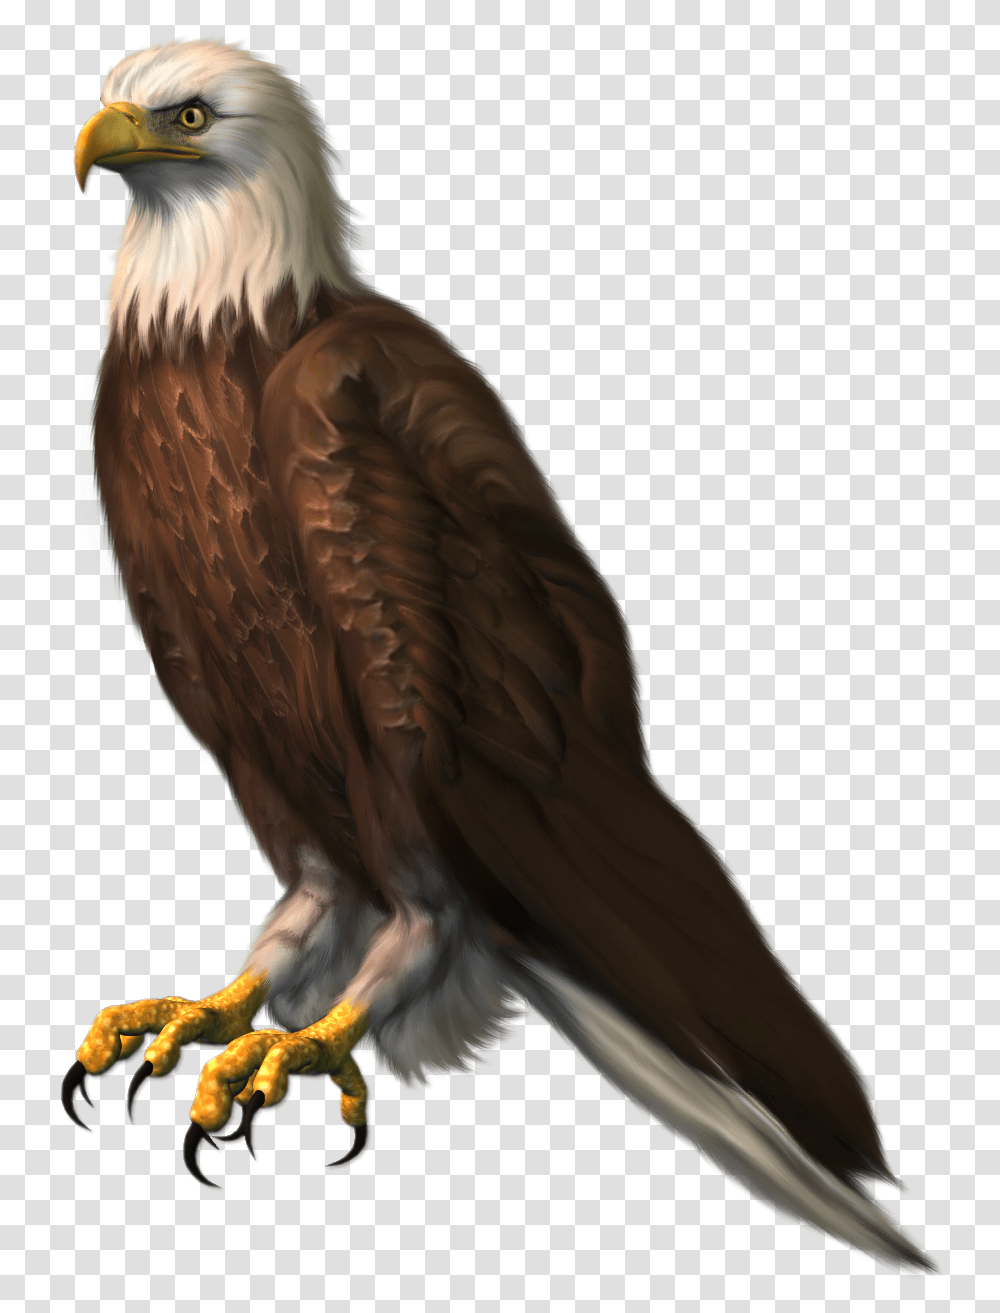 Sitting Eagle Hd, Bird, Animal, Bald Eagle, Vulture Transparent Png